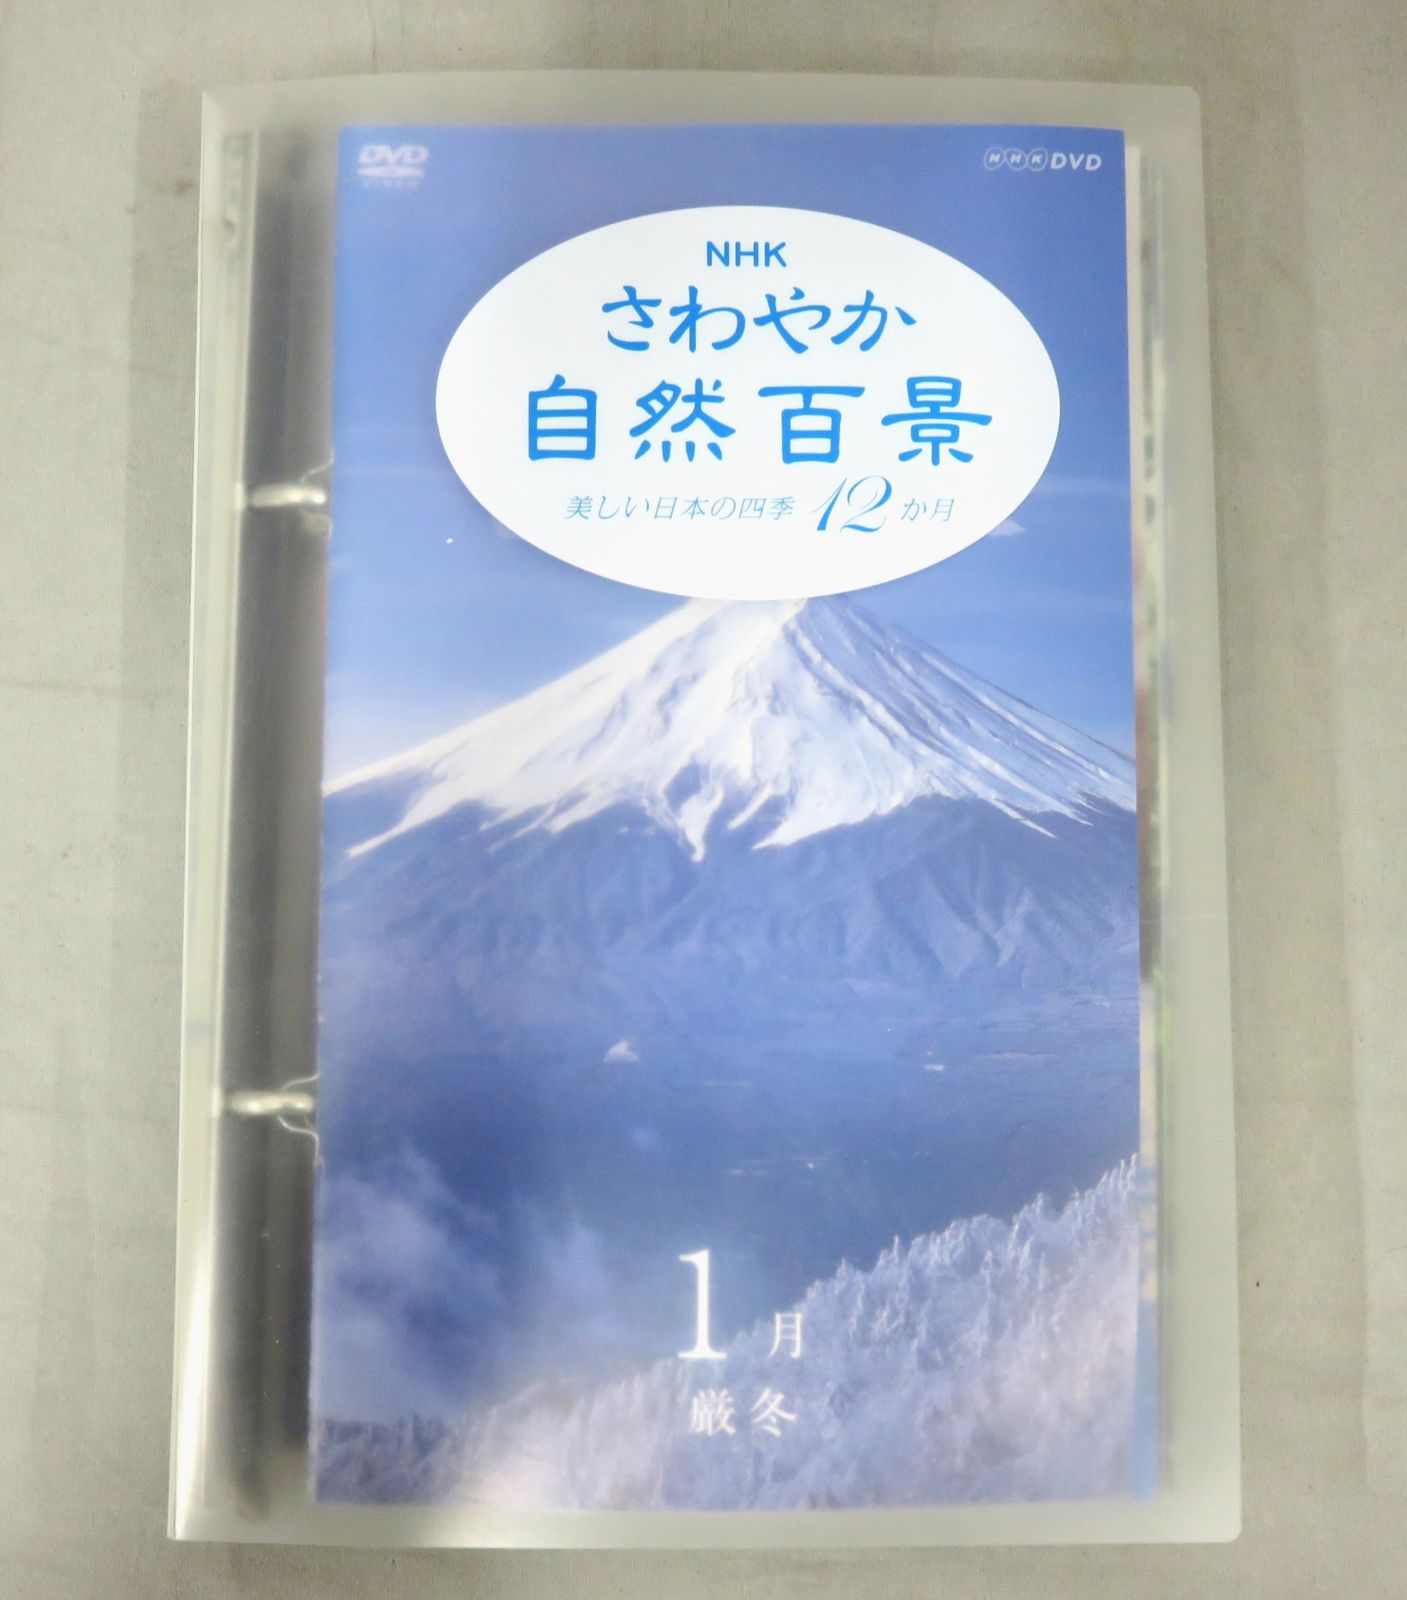 使い勝手の良い NHK 期間限定超特価 BOX- さわやか自然百景DVD BOX 第一集 DVD